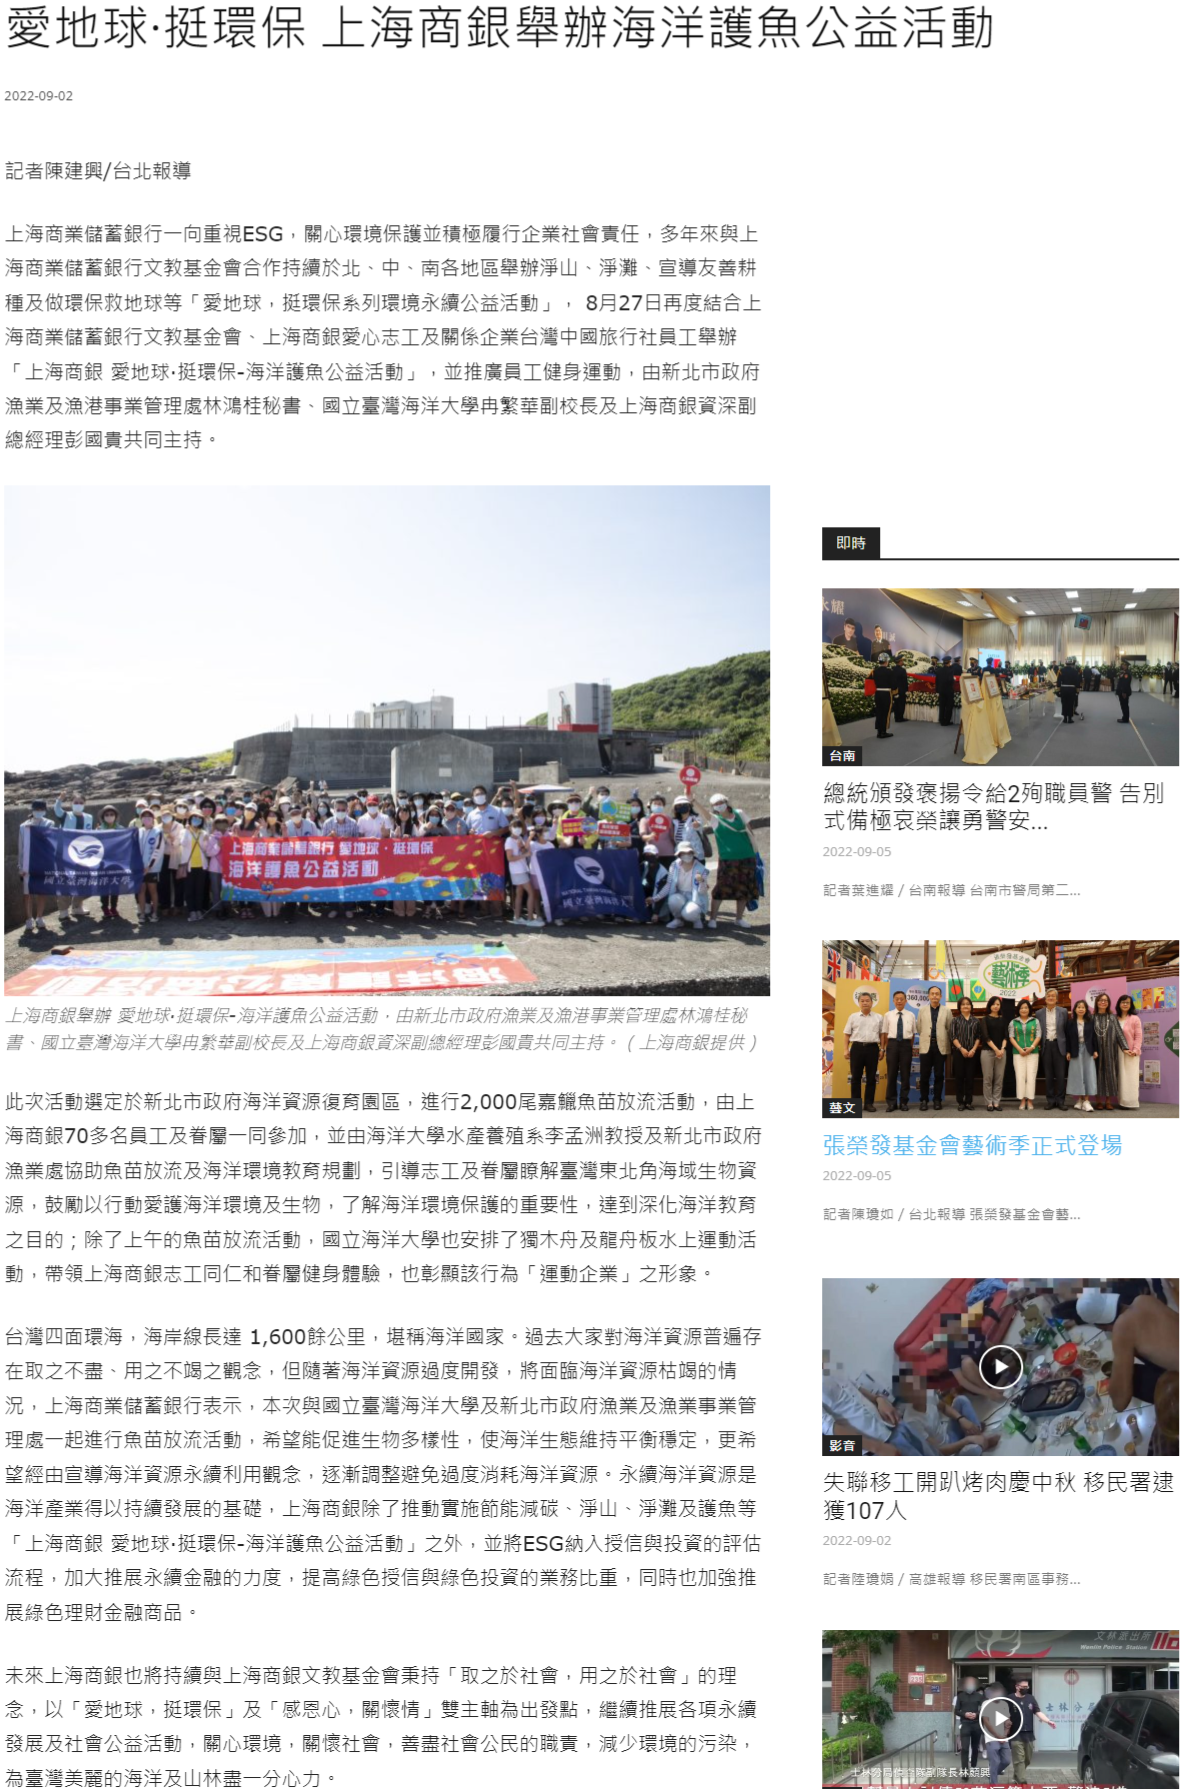 愛地球·挺環保 上海商銀舉辦海洋護魚公益活動 - 中華日報